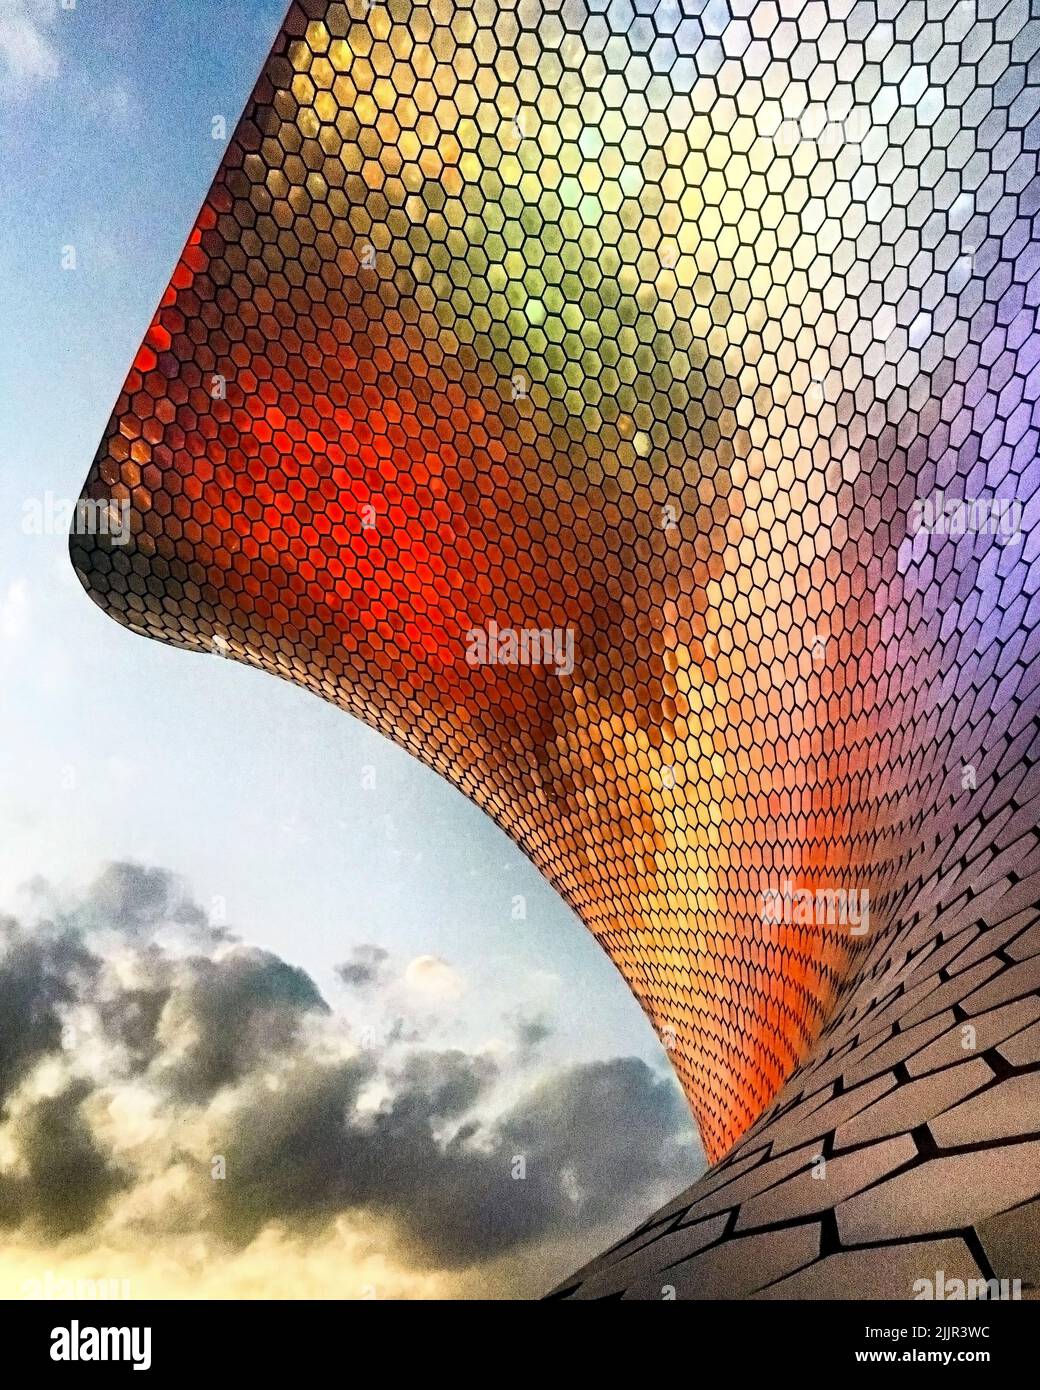 Farbliches Licht, das sich im Gitter des Museums widerspiegelt, mit Wolken und Himmel im Hintergrund Stockfoto